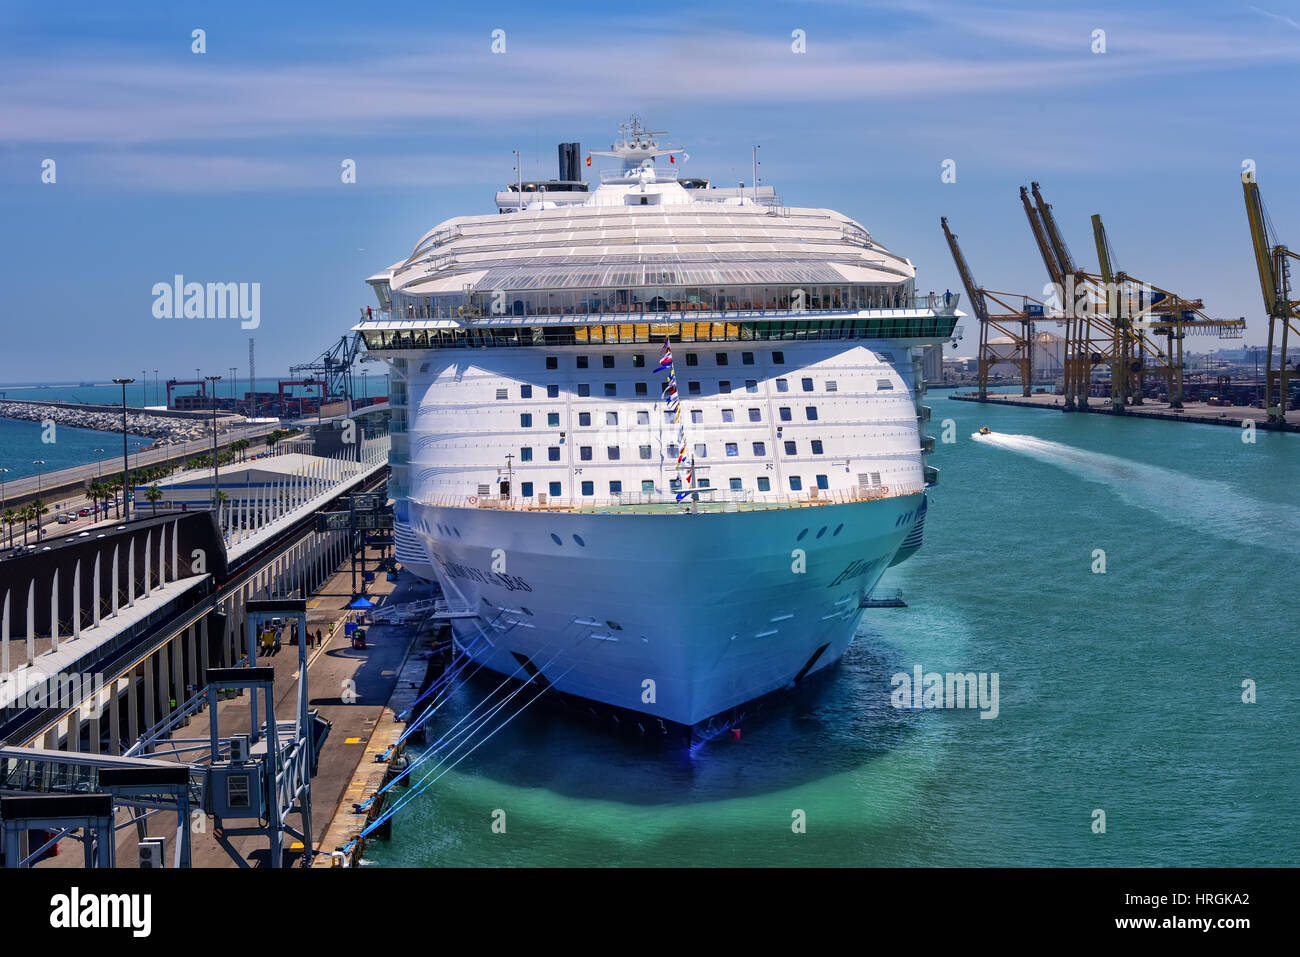 Barcelona, España - 7 de junio de 2016: Royal Caribbean, armonía de los Mares, es ahora el barco más grande del mundo, con un tonelaje bruto de 226,963. Foto de stock